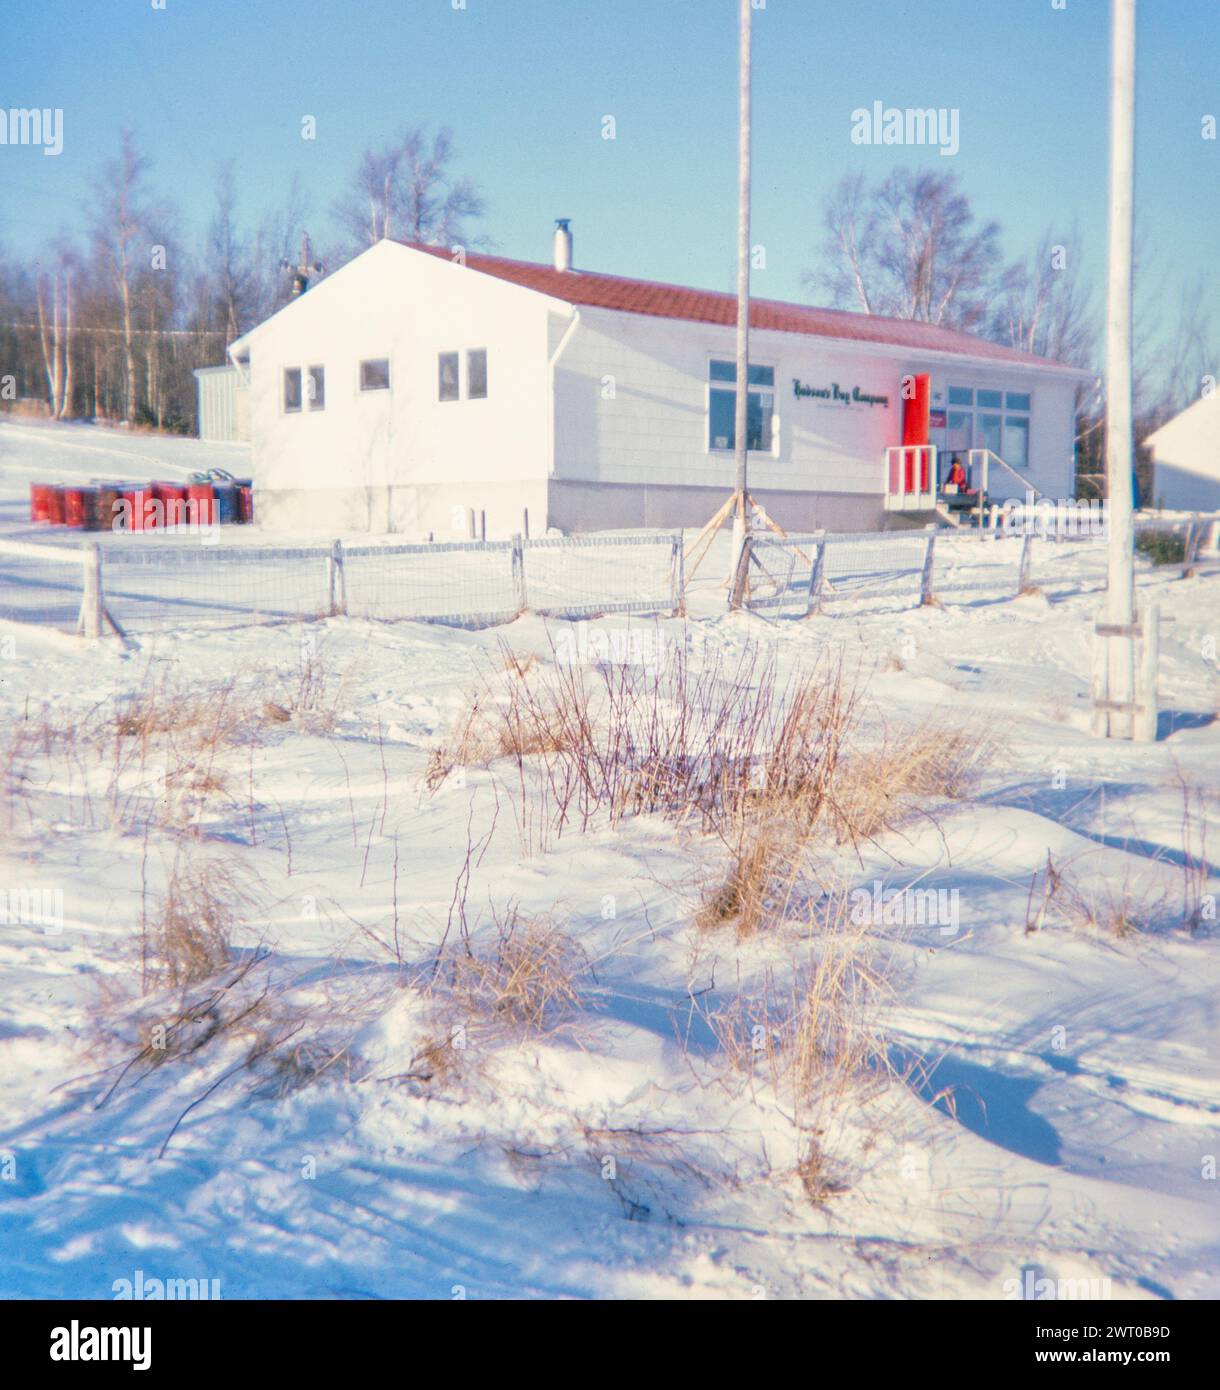 Communauté ojibway de la première nation Webequie, île Eastwood, nord de l'Ontario, Canada 1978 - magasin de la Compagnie de la Baie d'Hudson Banque D'Images